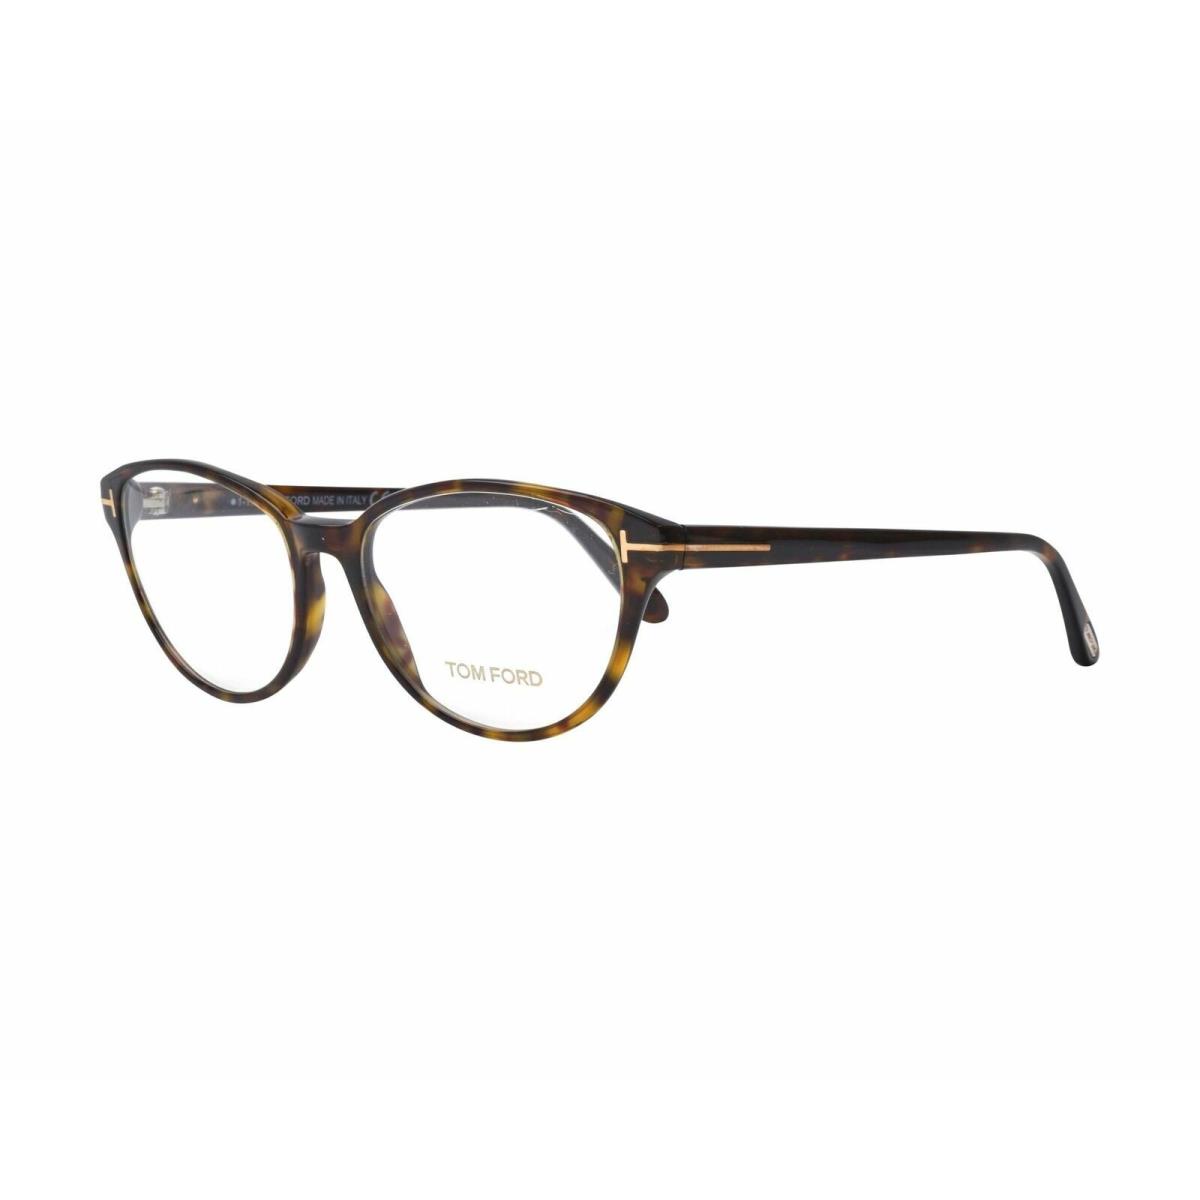 Tom Ford Eyewear FT5422 052 53MM Havana Designer Eyeglasses Optical Frames - Havana Frame